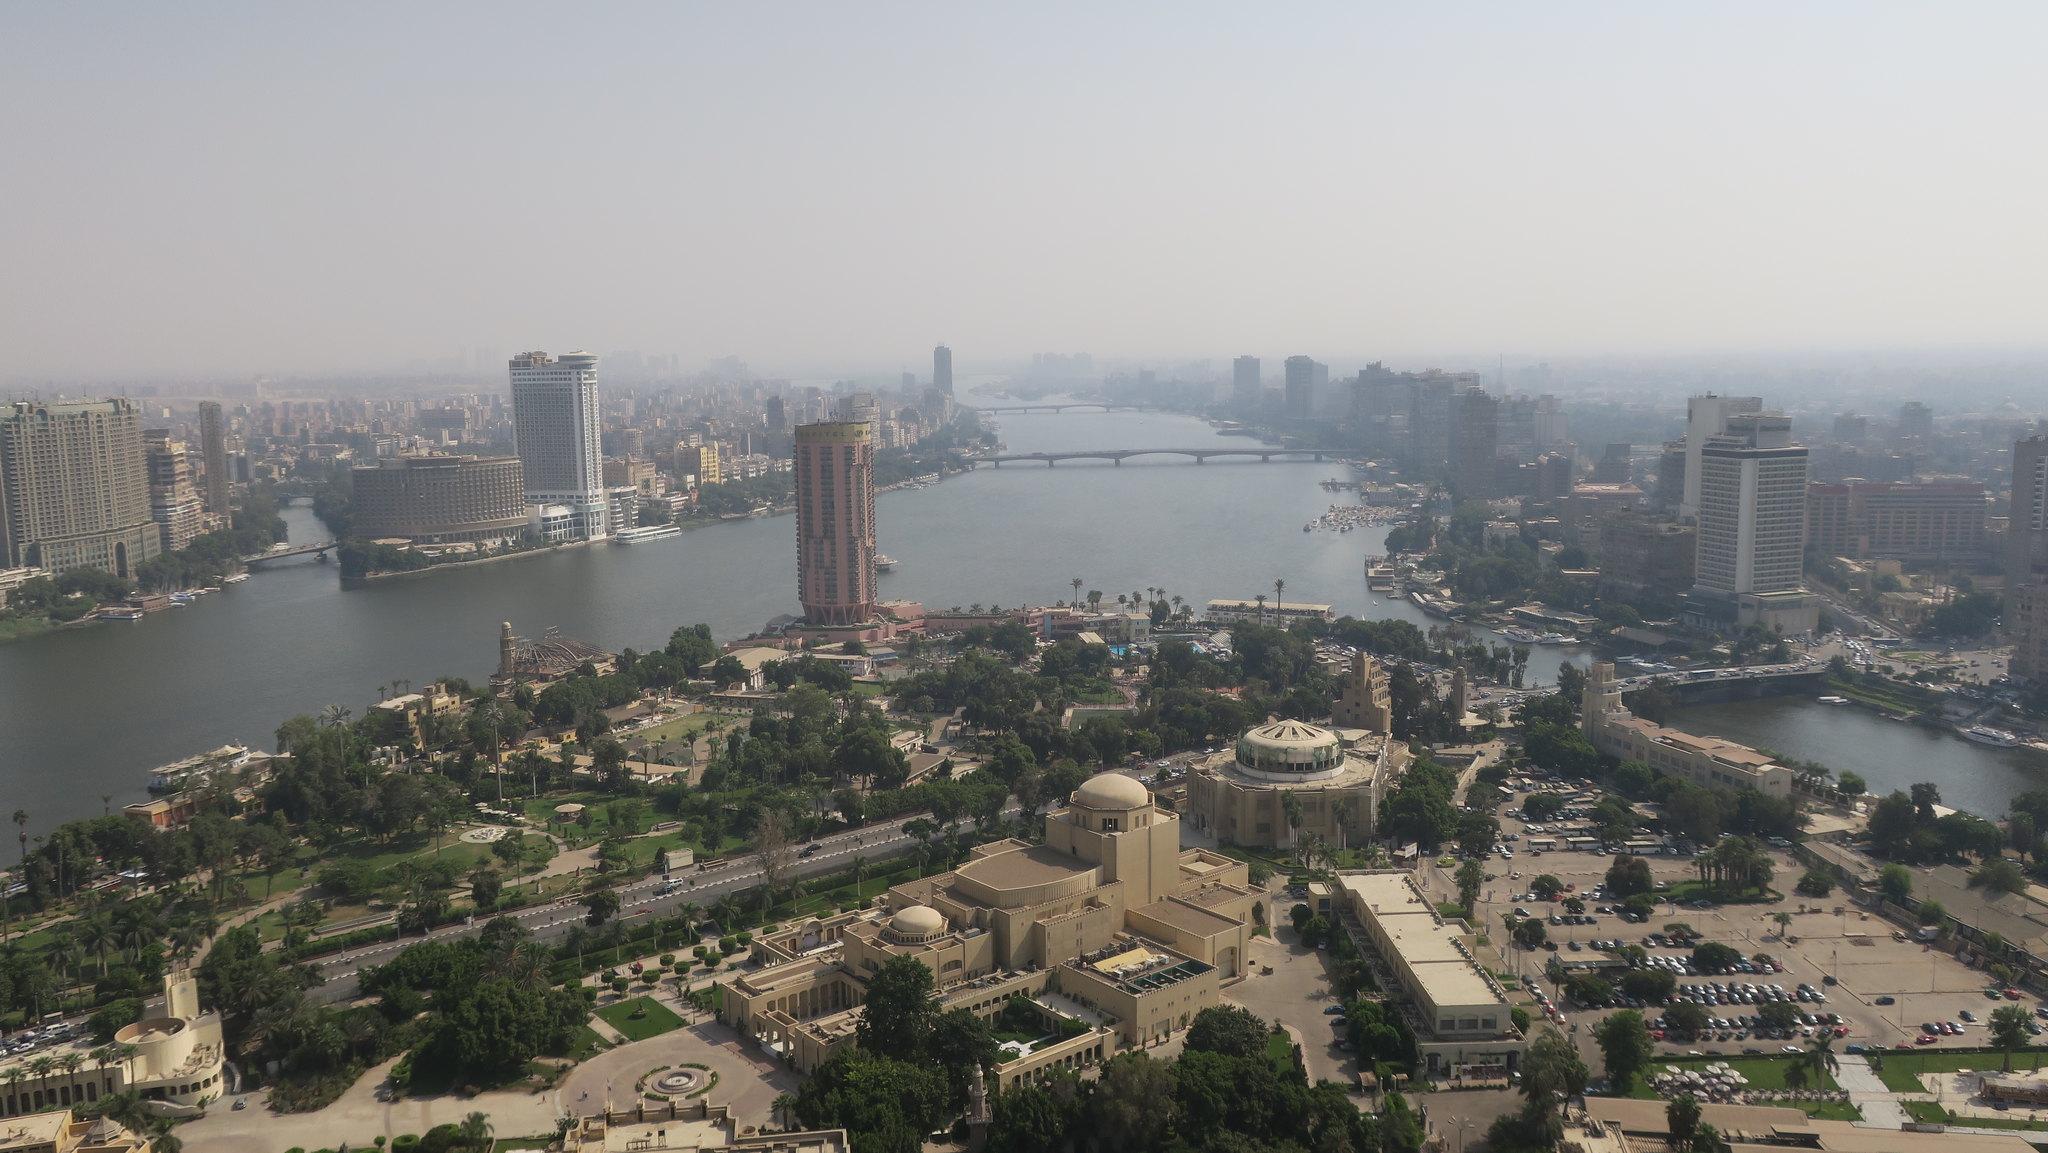 Φωτοφραφία από τον Πύργο στο κάιρο με τη θέα της πόλης και τον ποταμό Νείλο που διασχίζει το κάιρο